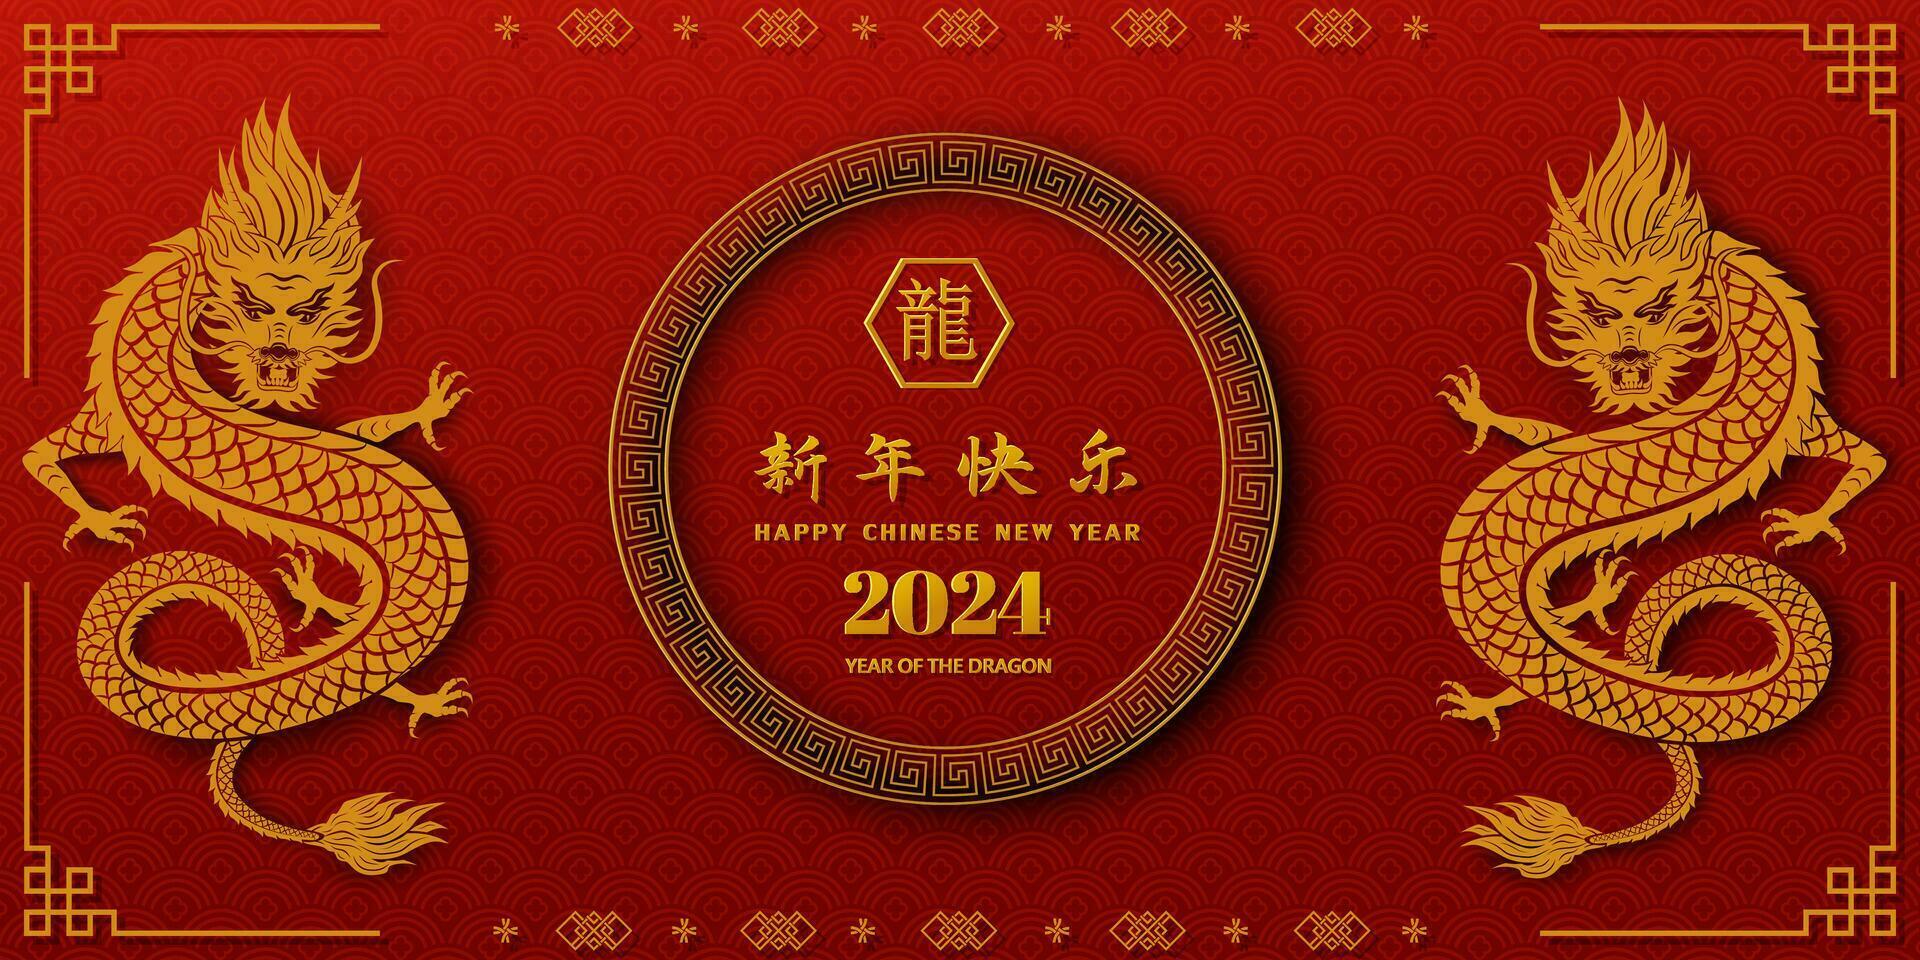 content chinois Nouveau année 2024, zodiaque signe pour le année de dragon sur asiatique arrière-plan, chinois traduire signifier content Nouveau année 2024,année de le dragon vecteur